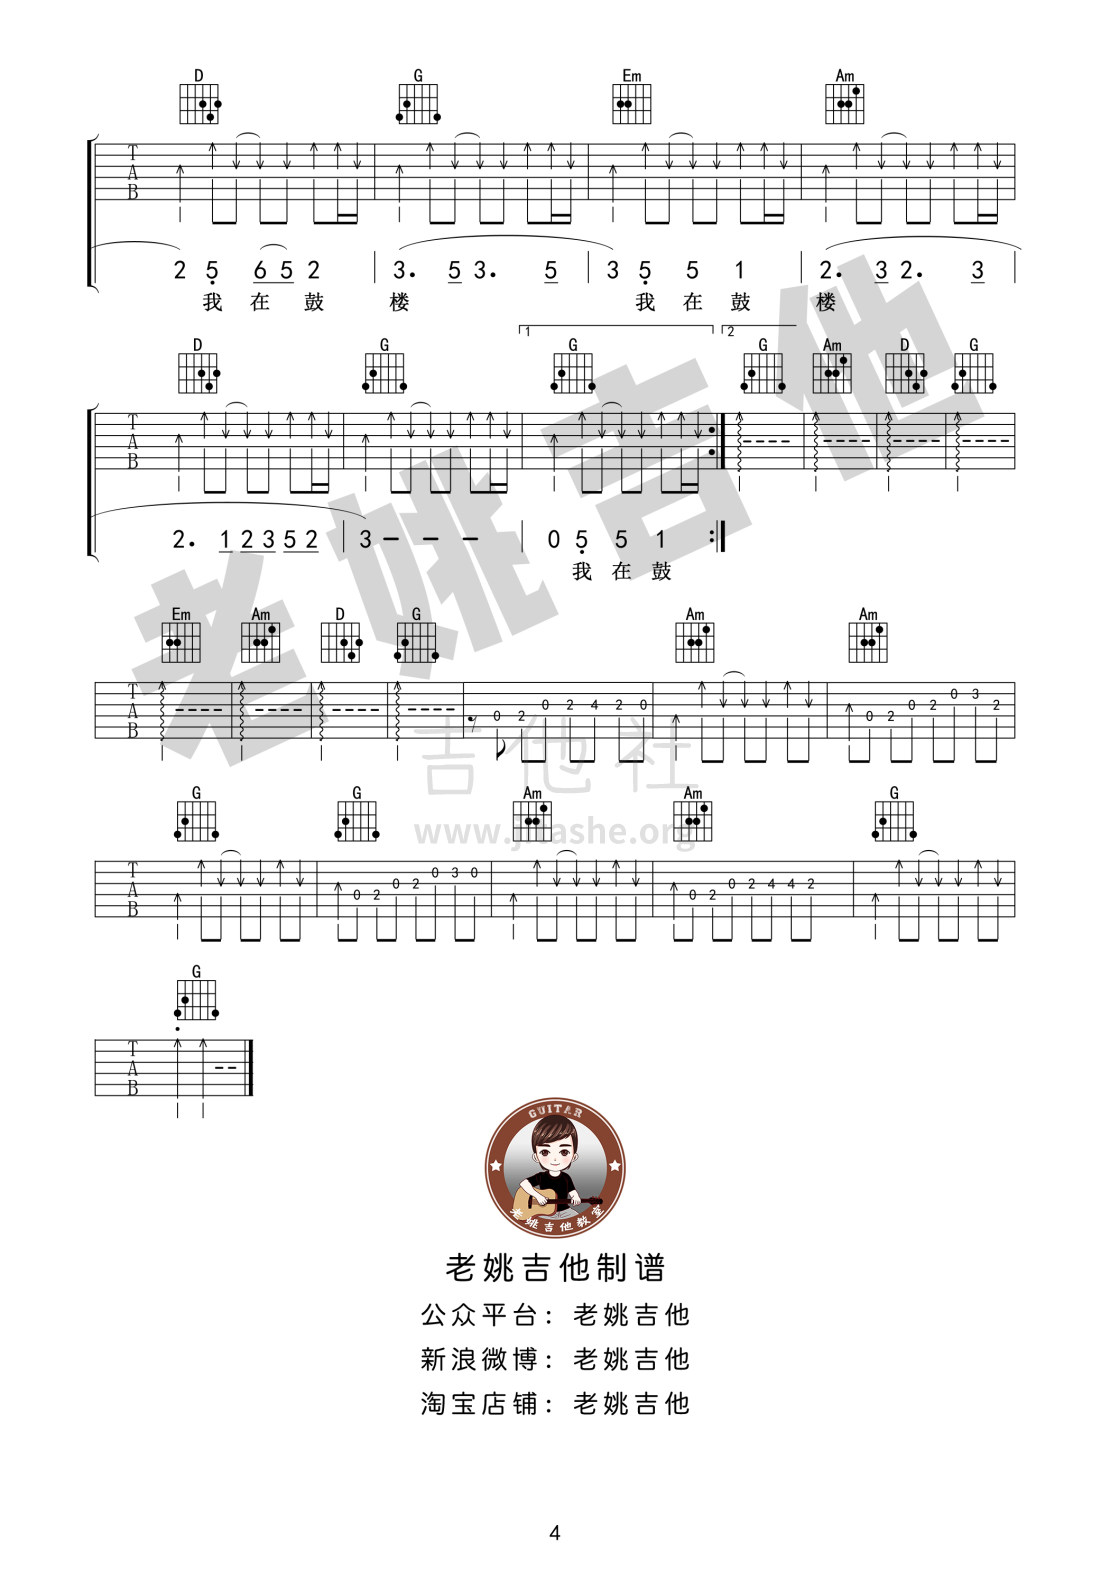 打印:鼓楼（老姚吉他）吉他谱_赵雷(雷子)_鼓楼 (4).jpg